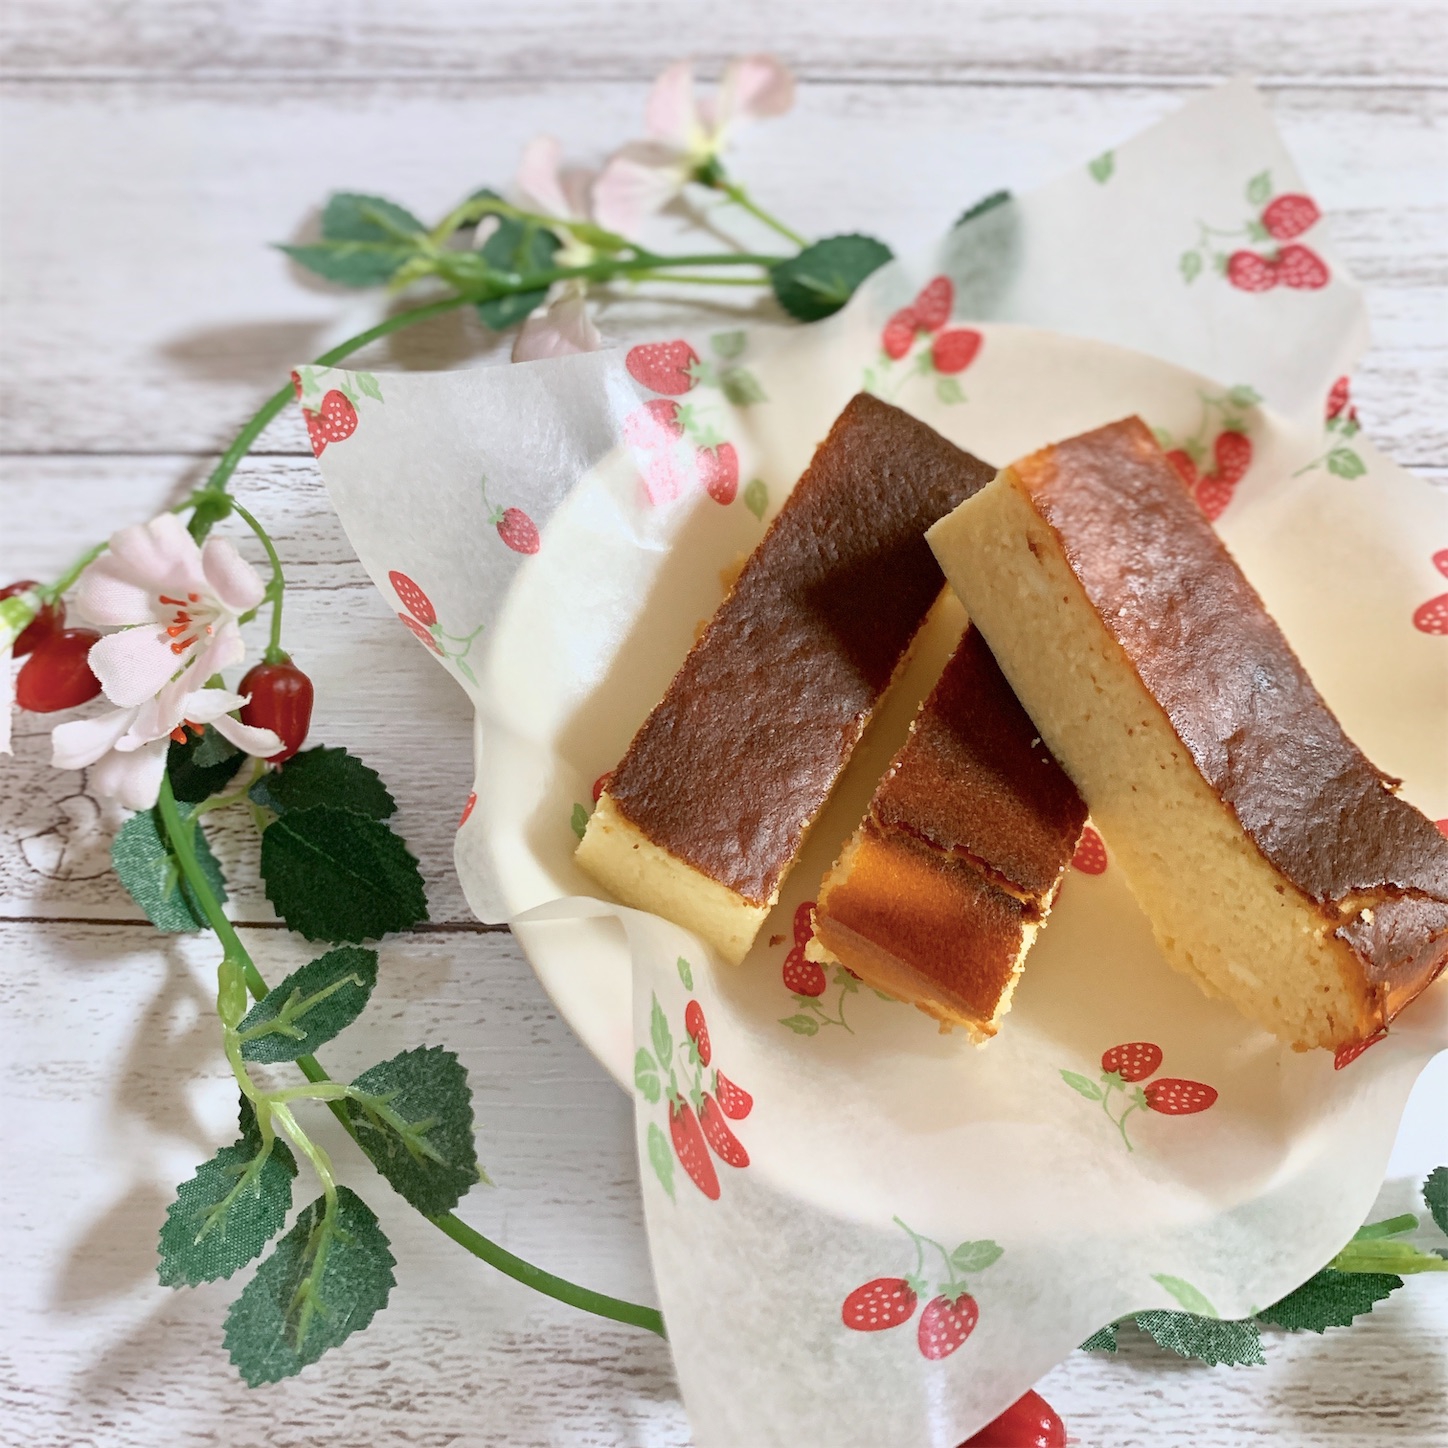 超低糖質 濃厚ベイクドチーズケーキ レシピ 作り方 By 健康オタクのなしこ 楽天レシピ